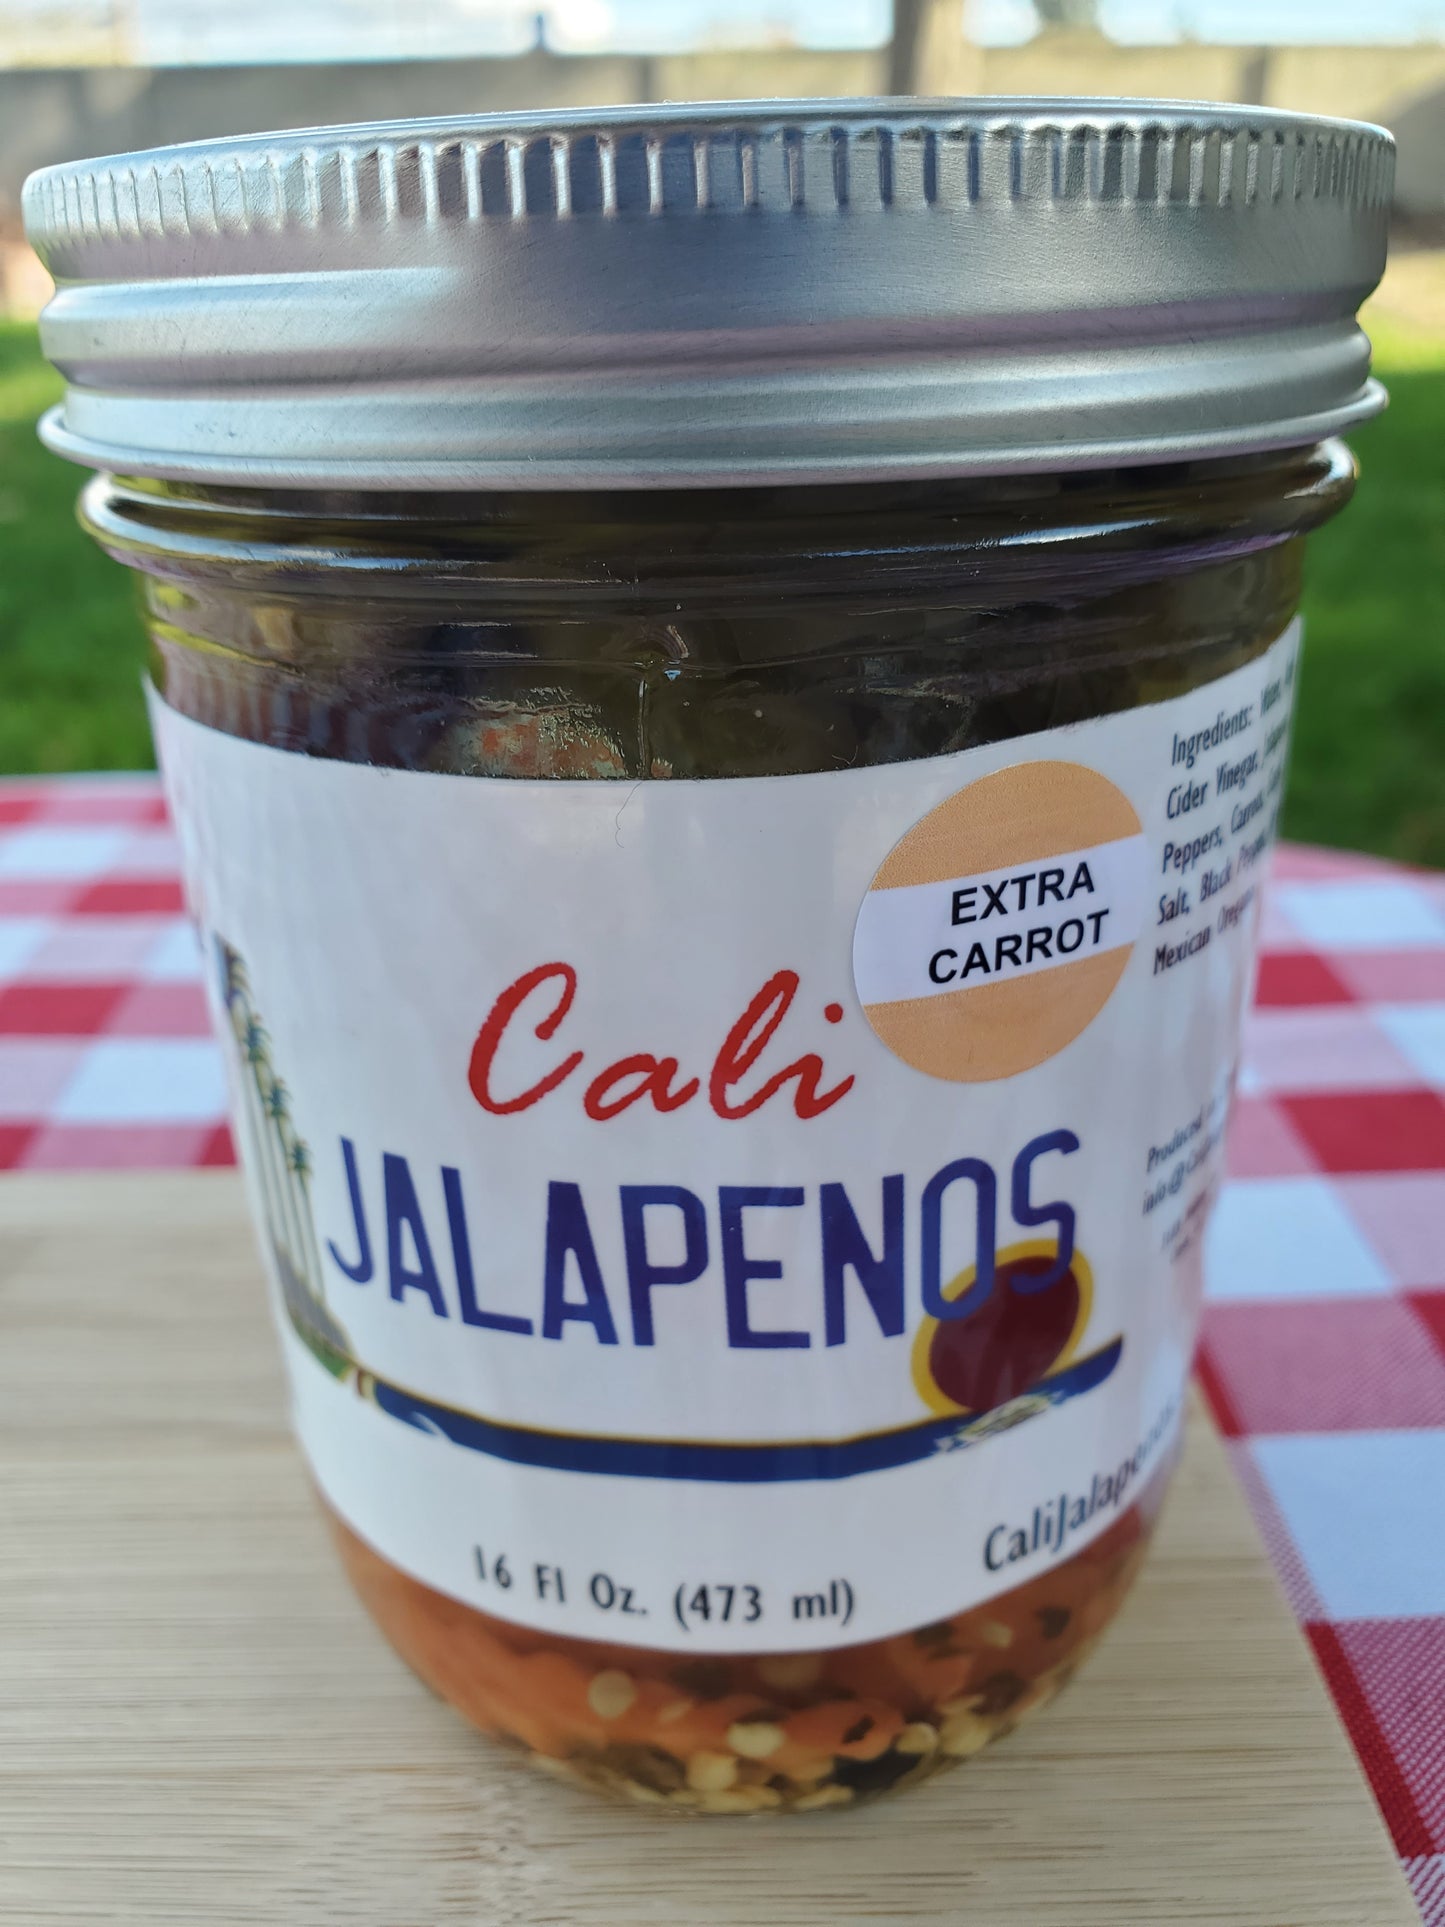 Extra Carrot Jalapenos